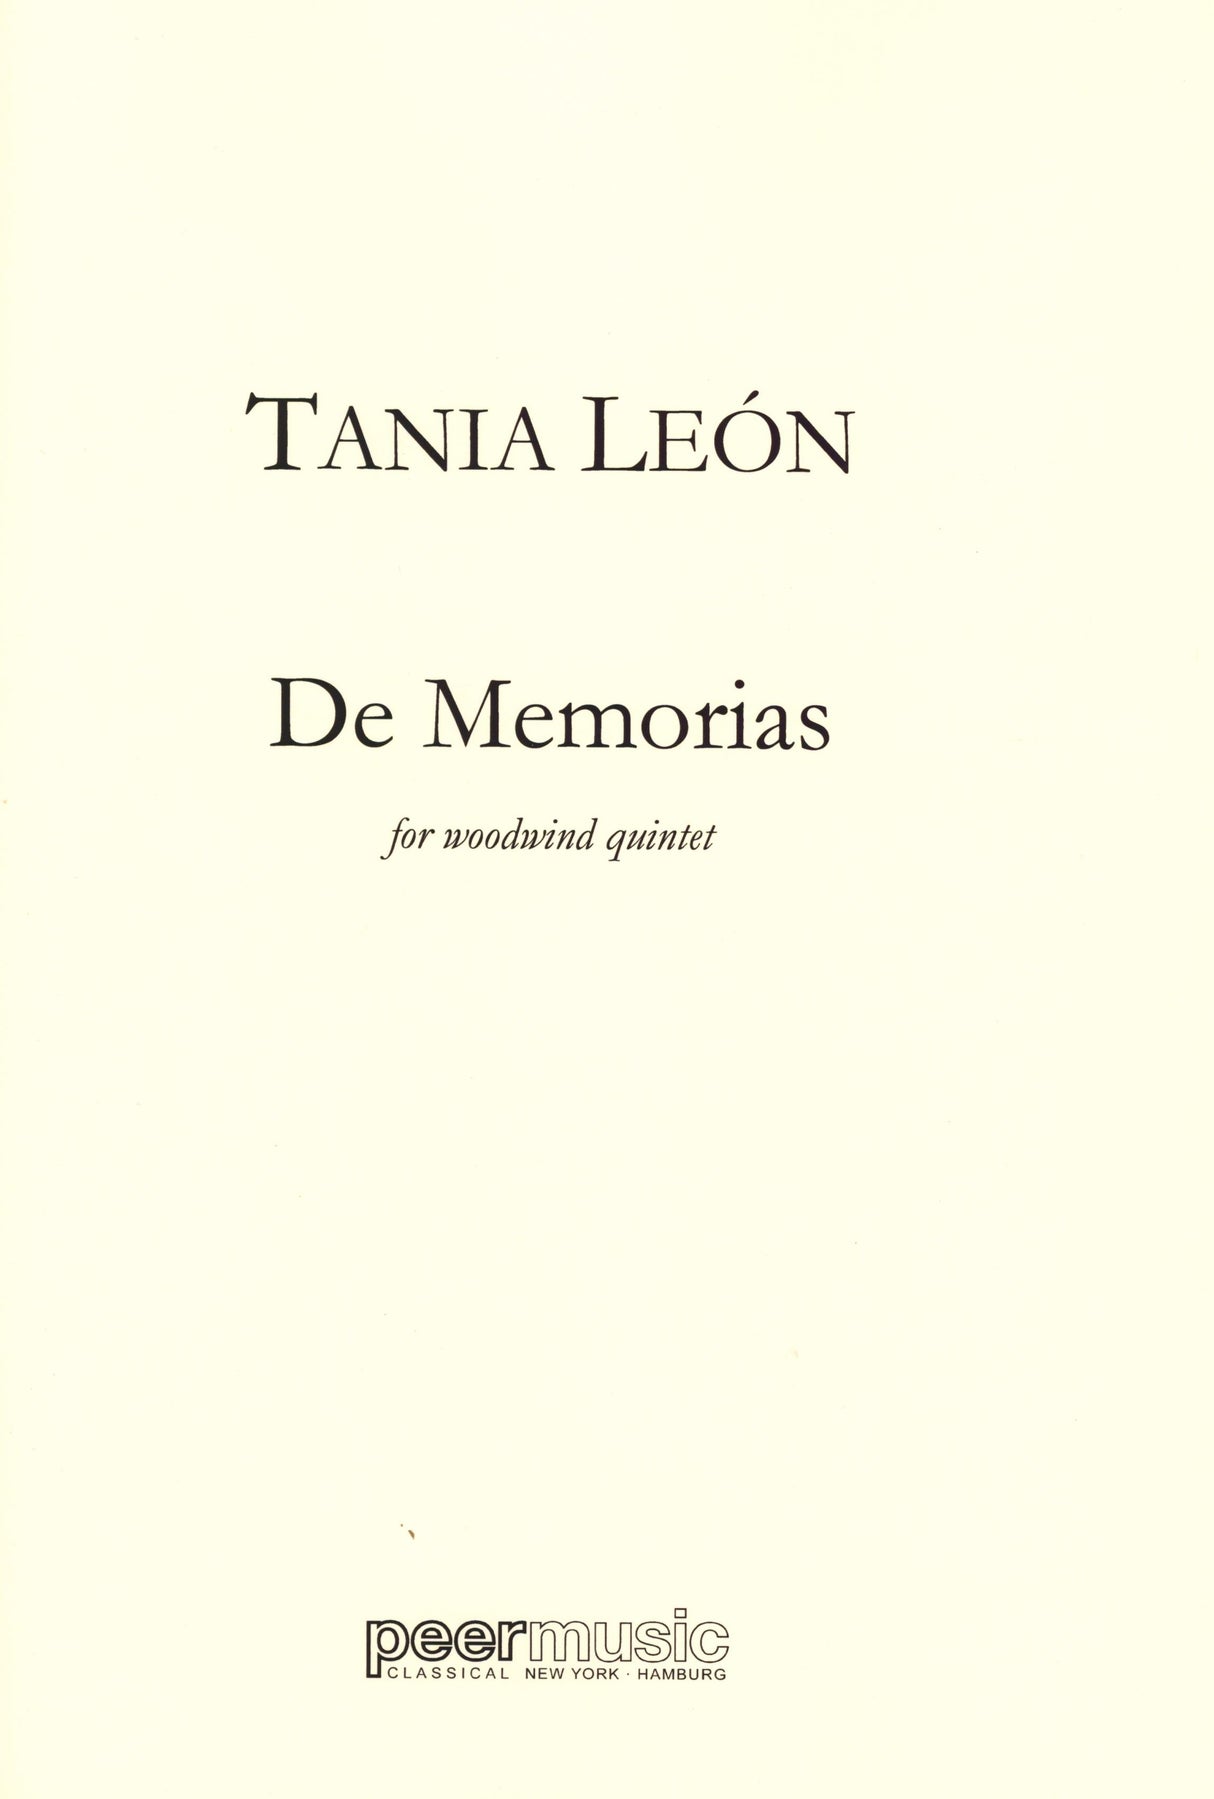 León: De Memorias